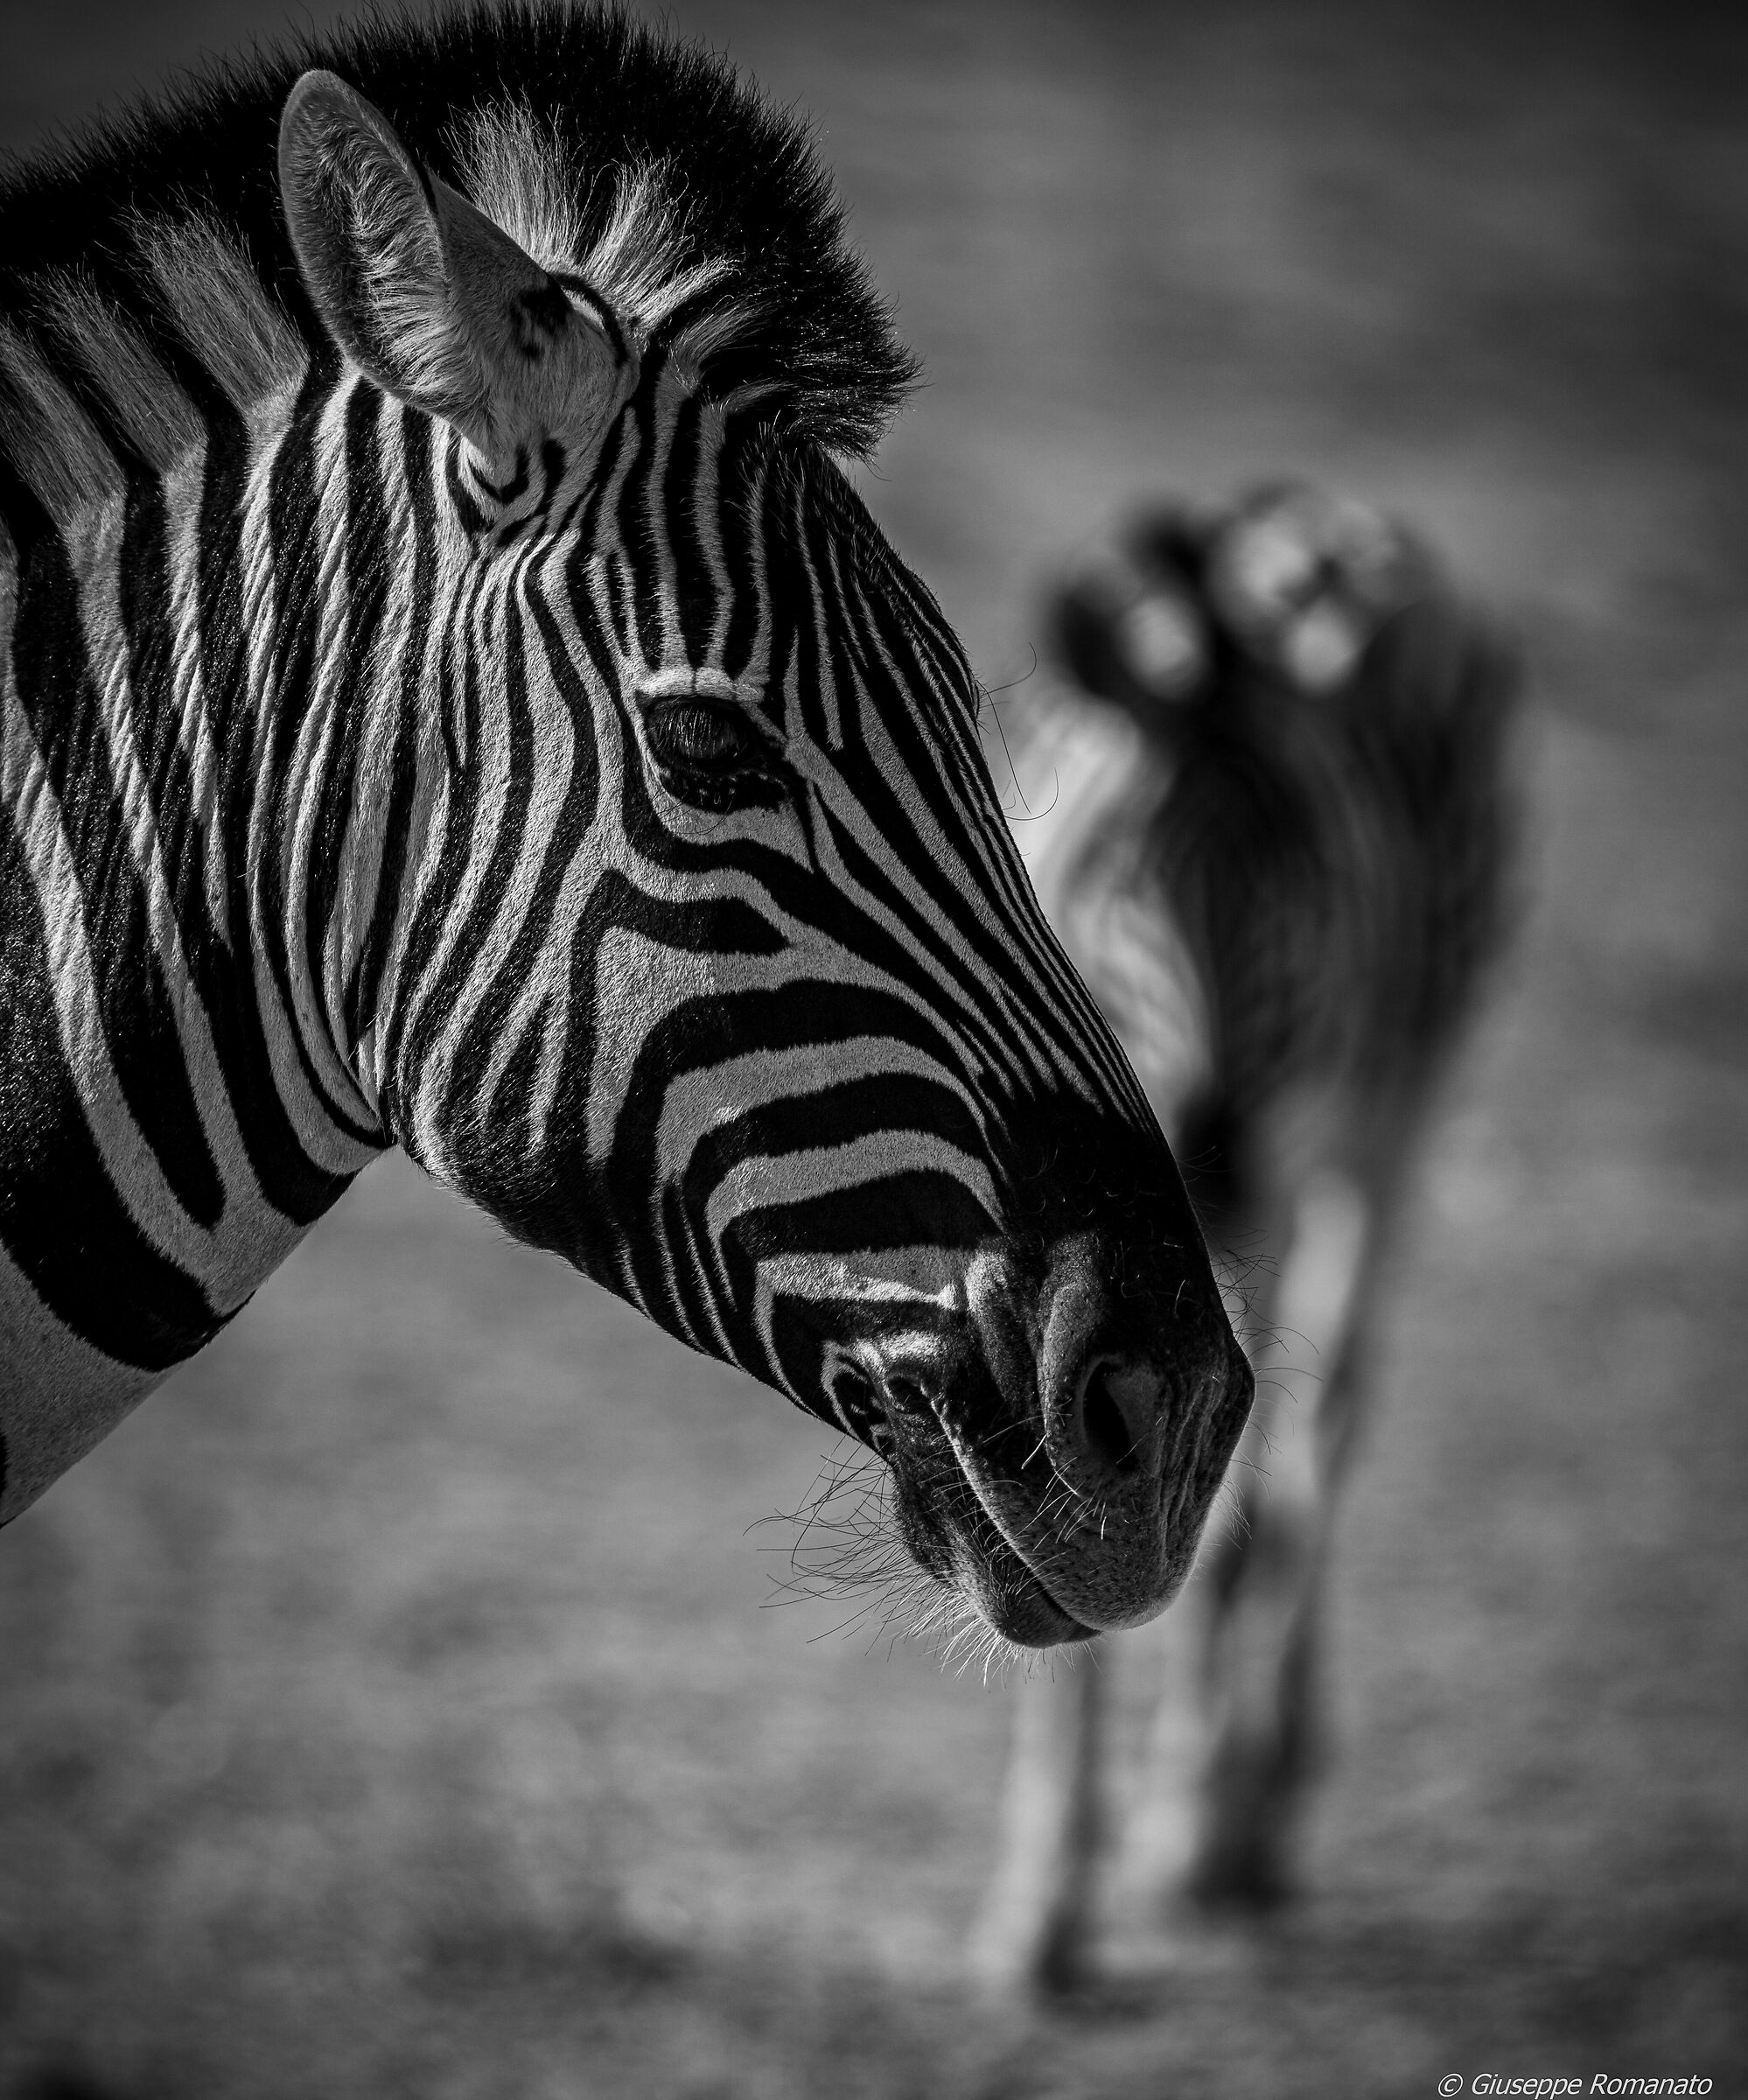 Zebra, in black and white...